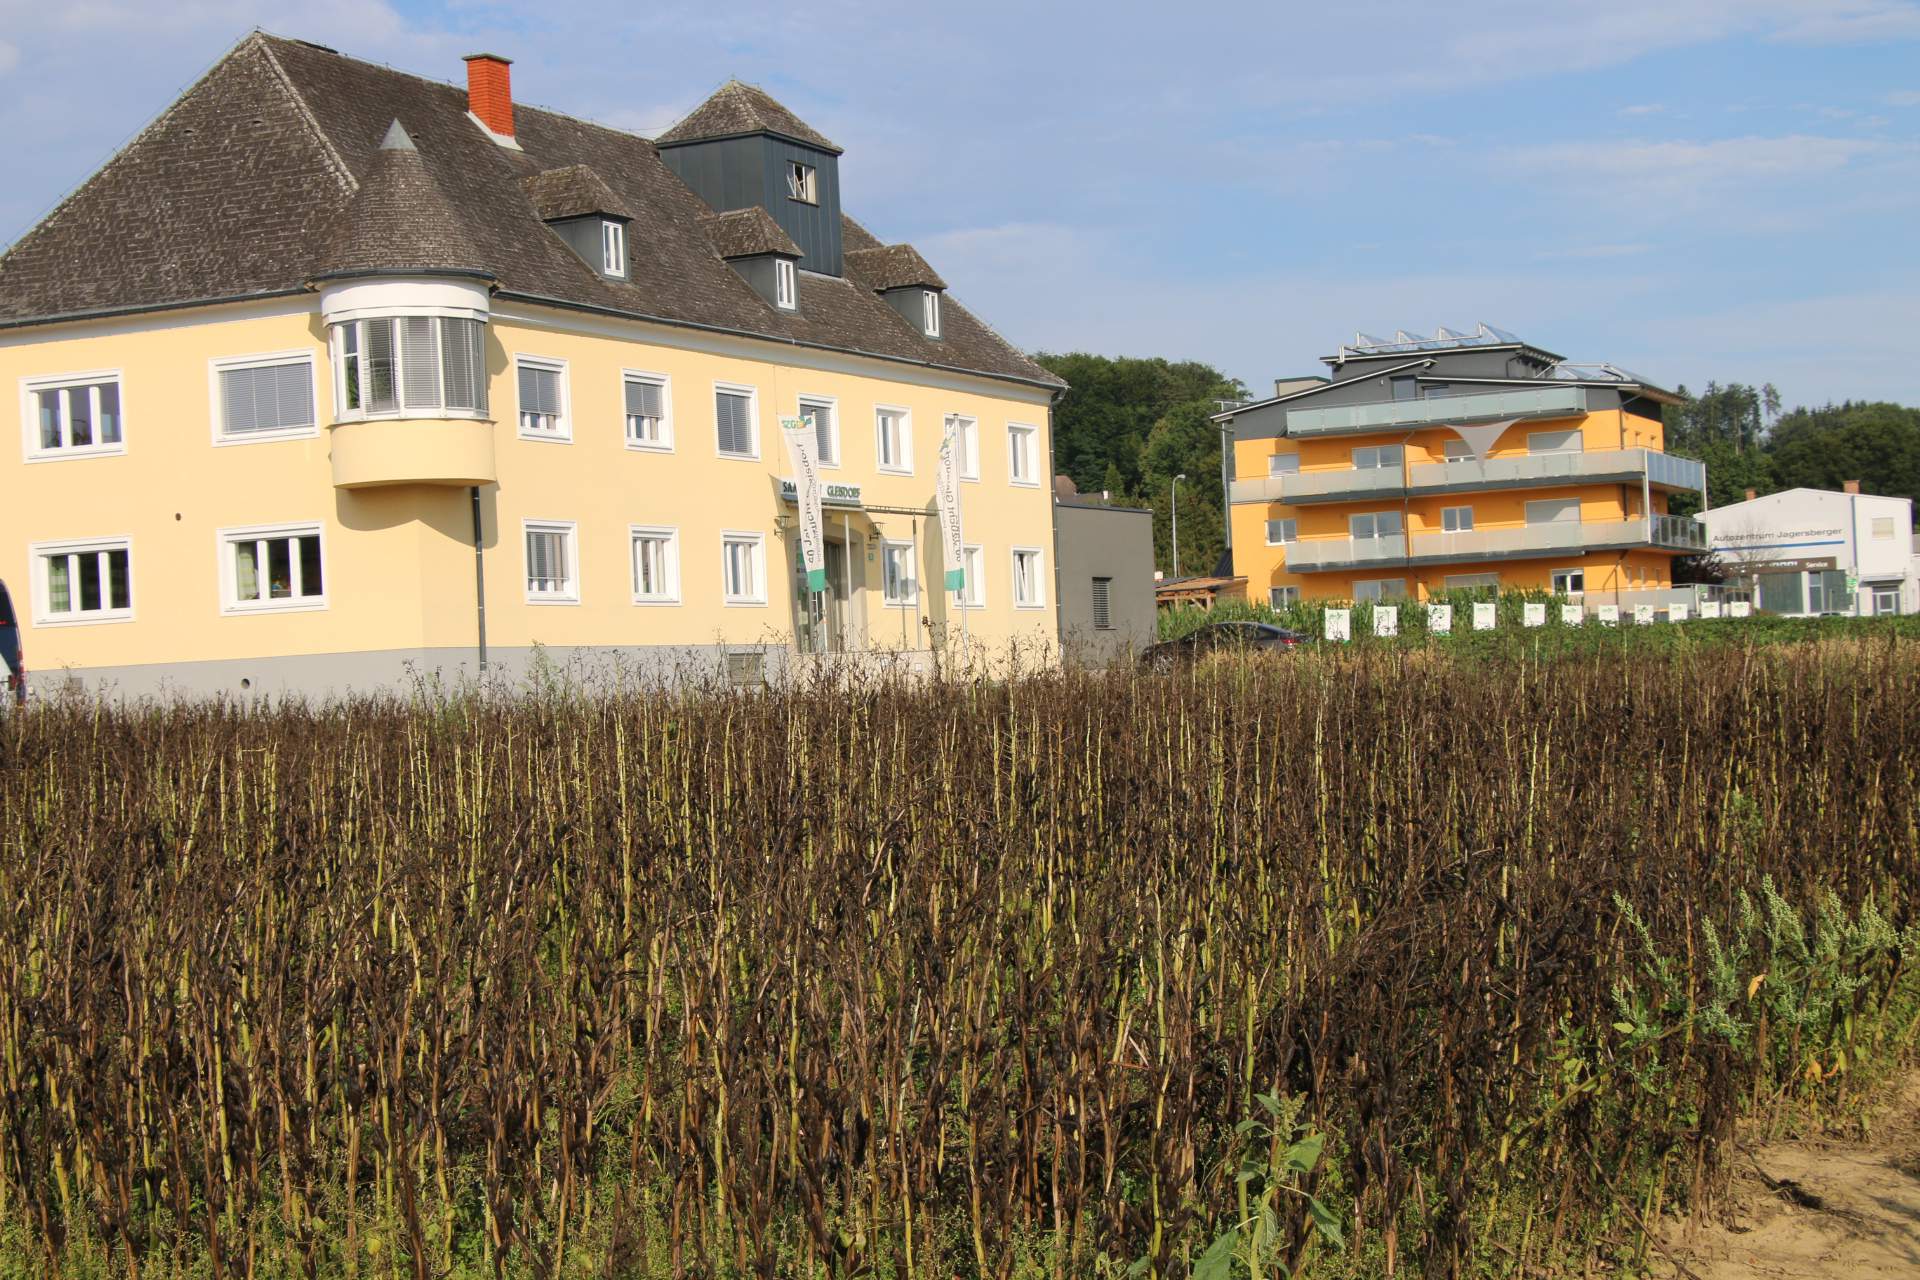 W Saatzucht Gleisdorf hoduje się także bobik ozimy i jary.